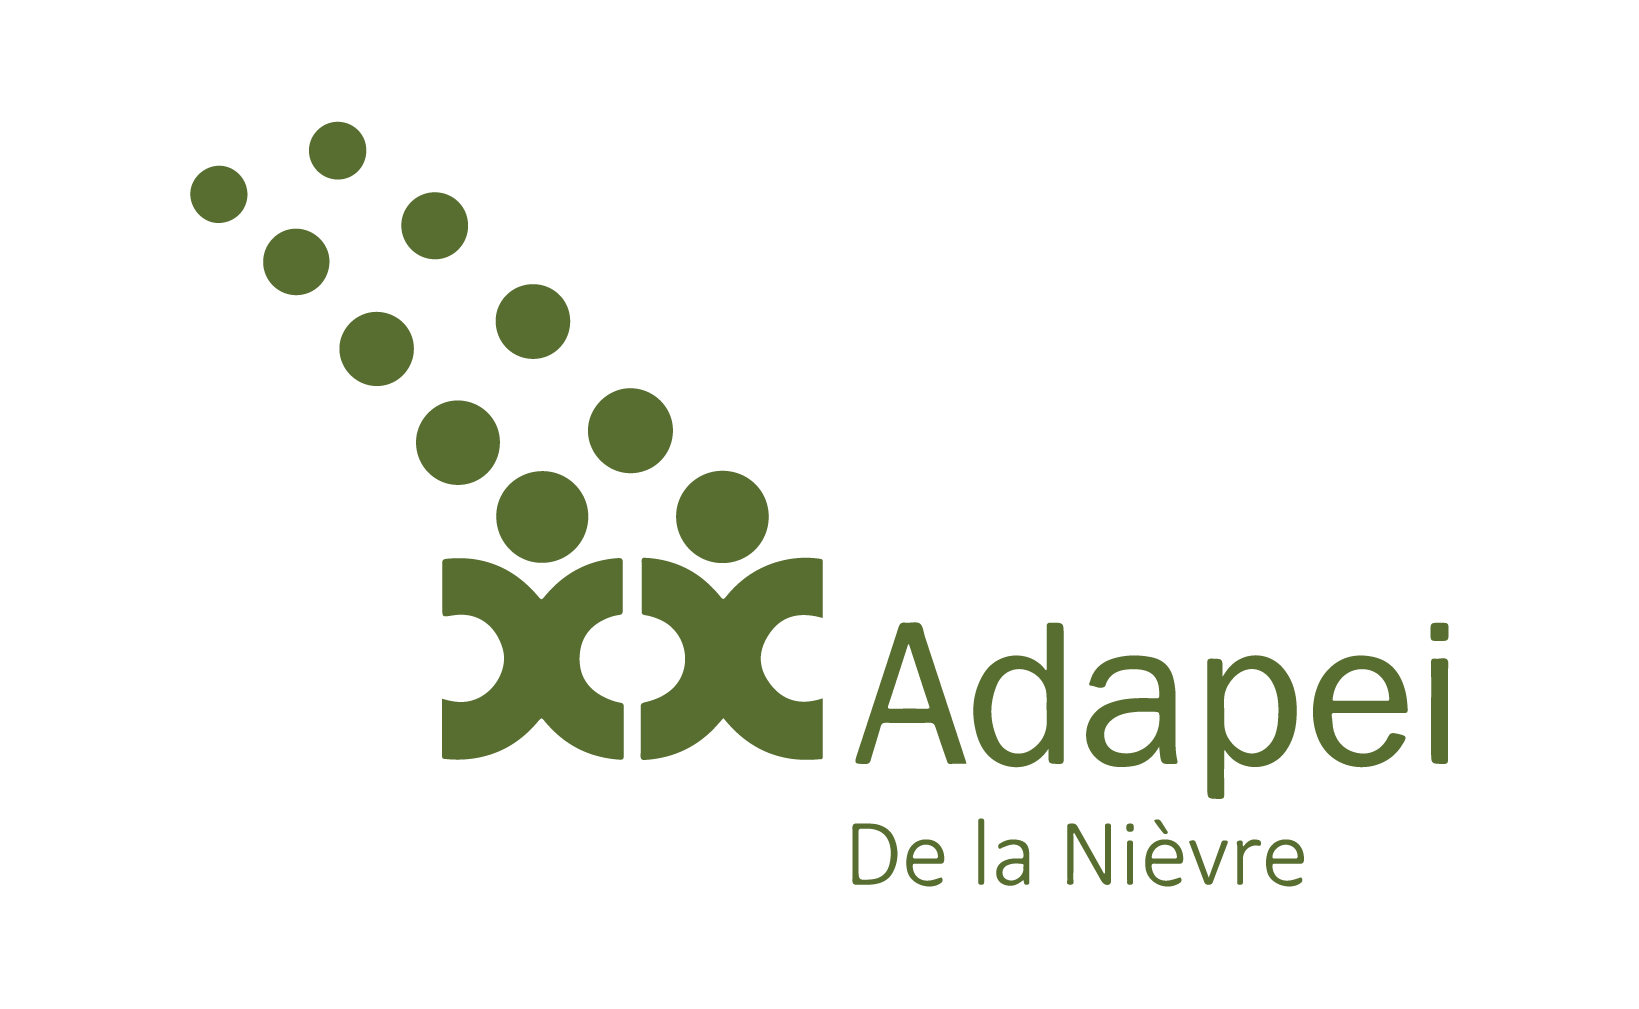 L'adapei de la Nièvre est une association nivernaise pour laquelle nous fournissons divers produits marqué avec leur logo, tablier, veste de travail, bavoir...